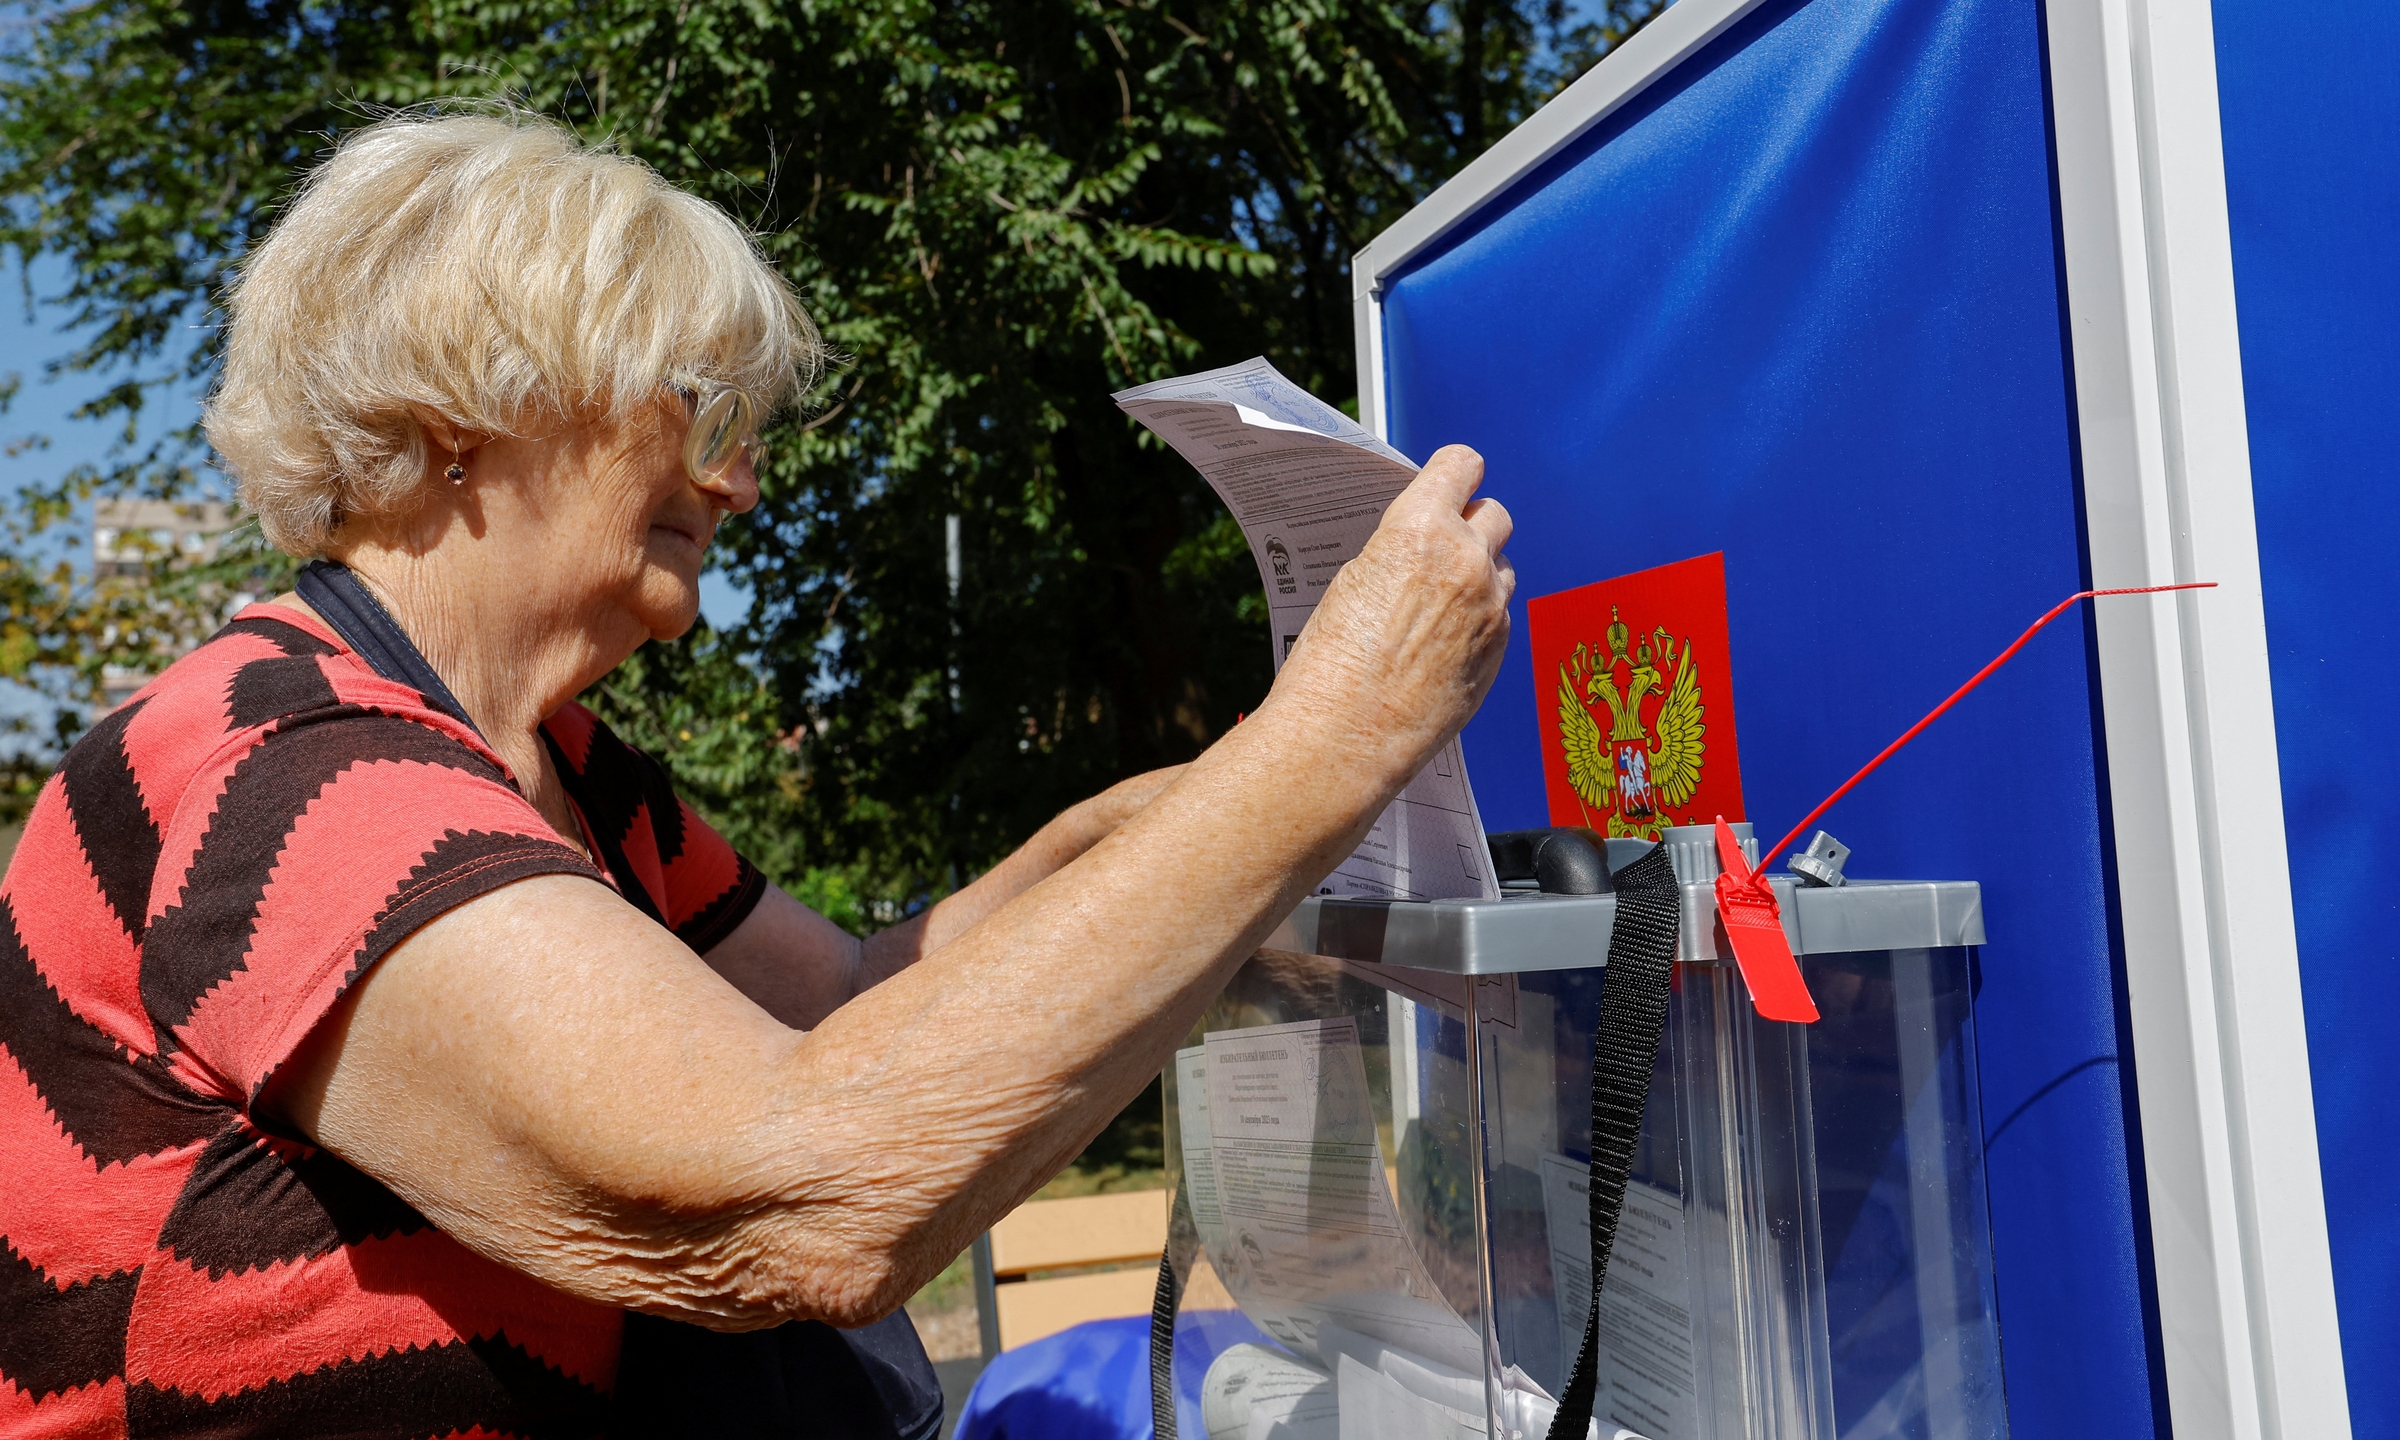 Cử tri đi bầu tại một trạm bỏ phiếu di động ở thành phố Mariupol, Donetsk, hôm 31/8. Ảnh: Reuters